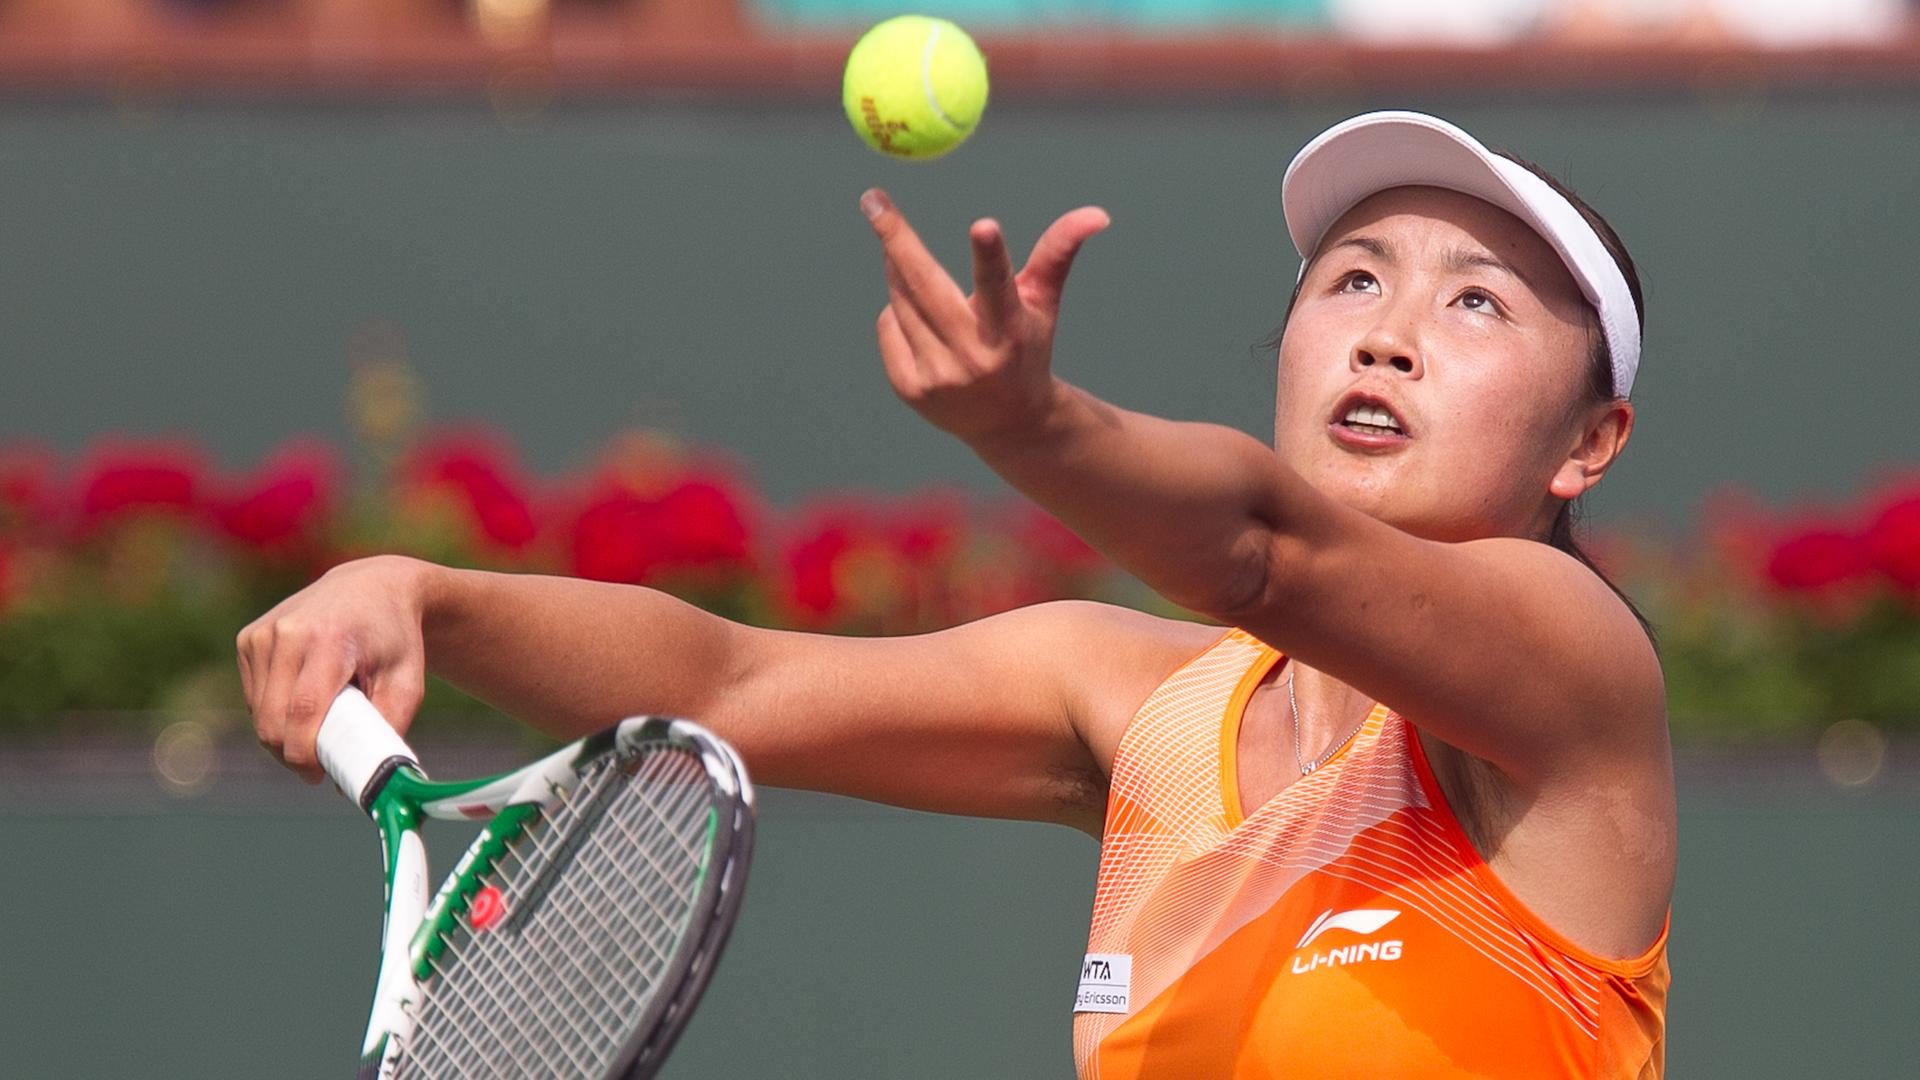 Die chinesische Tennis-Spielerin Peng Shuai bei einem Spiel.